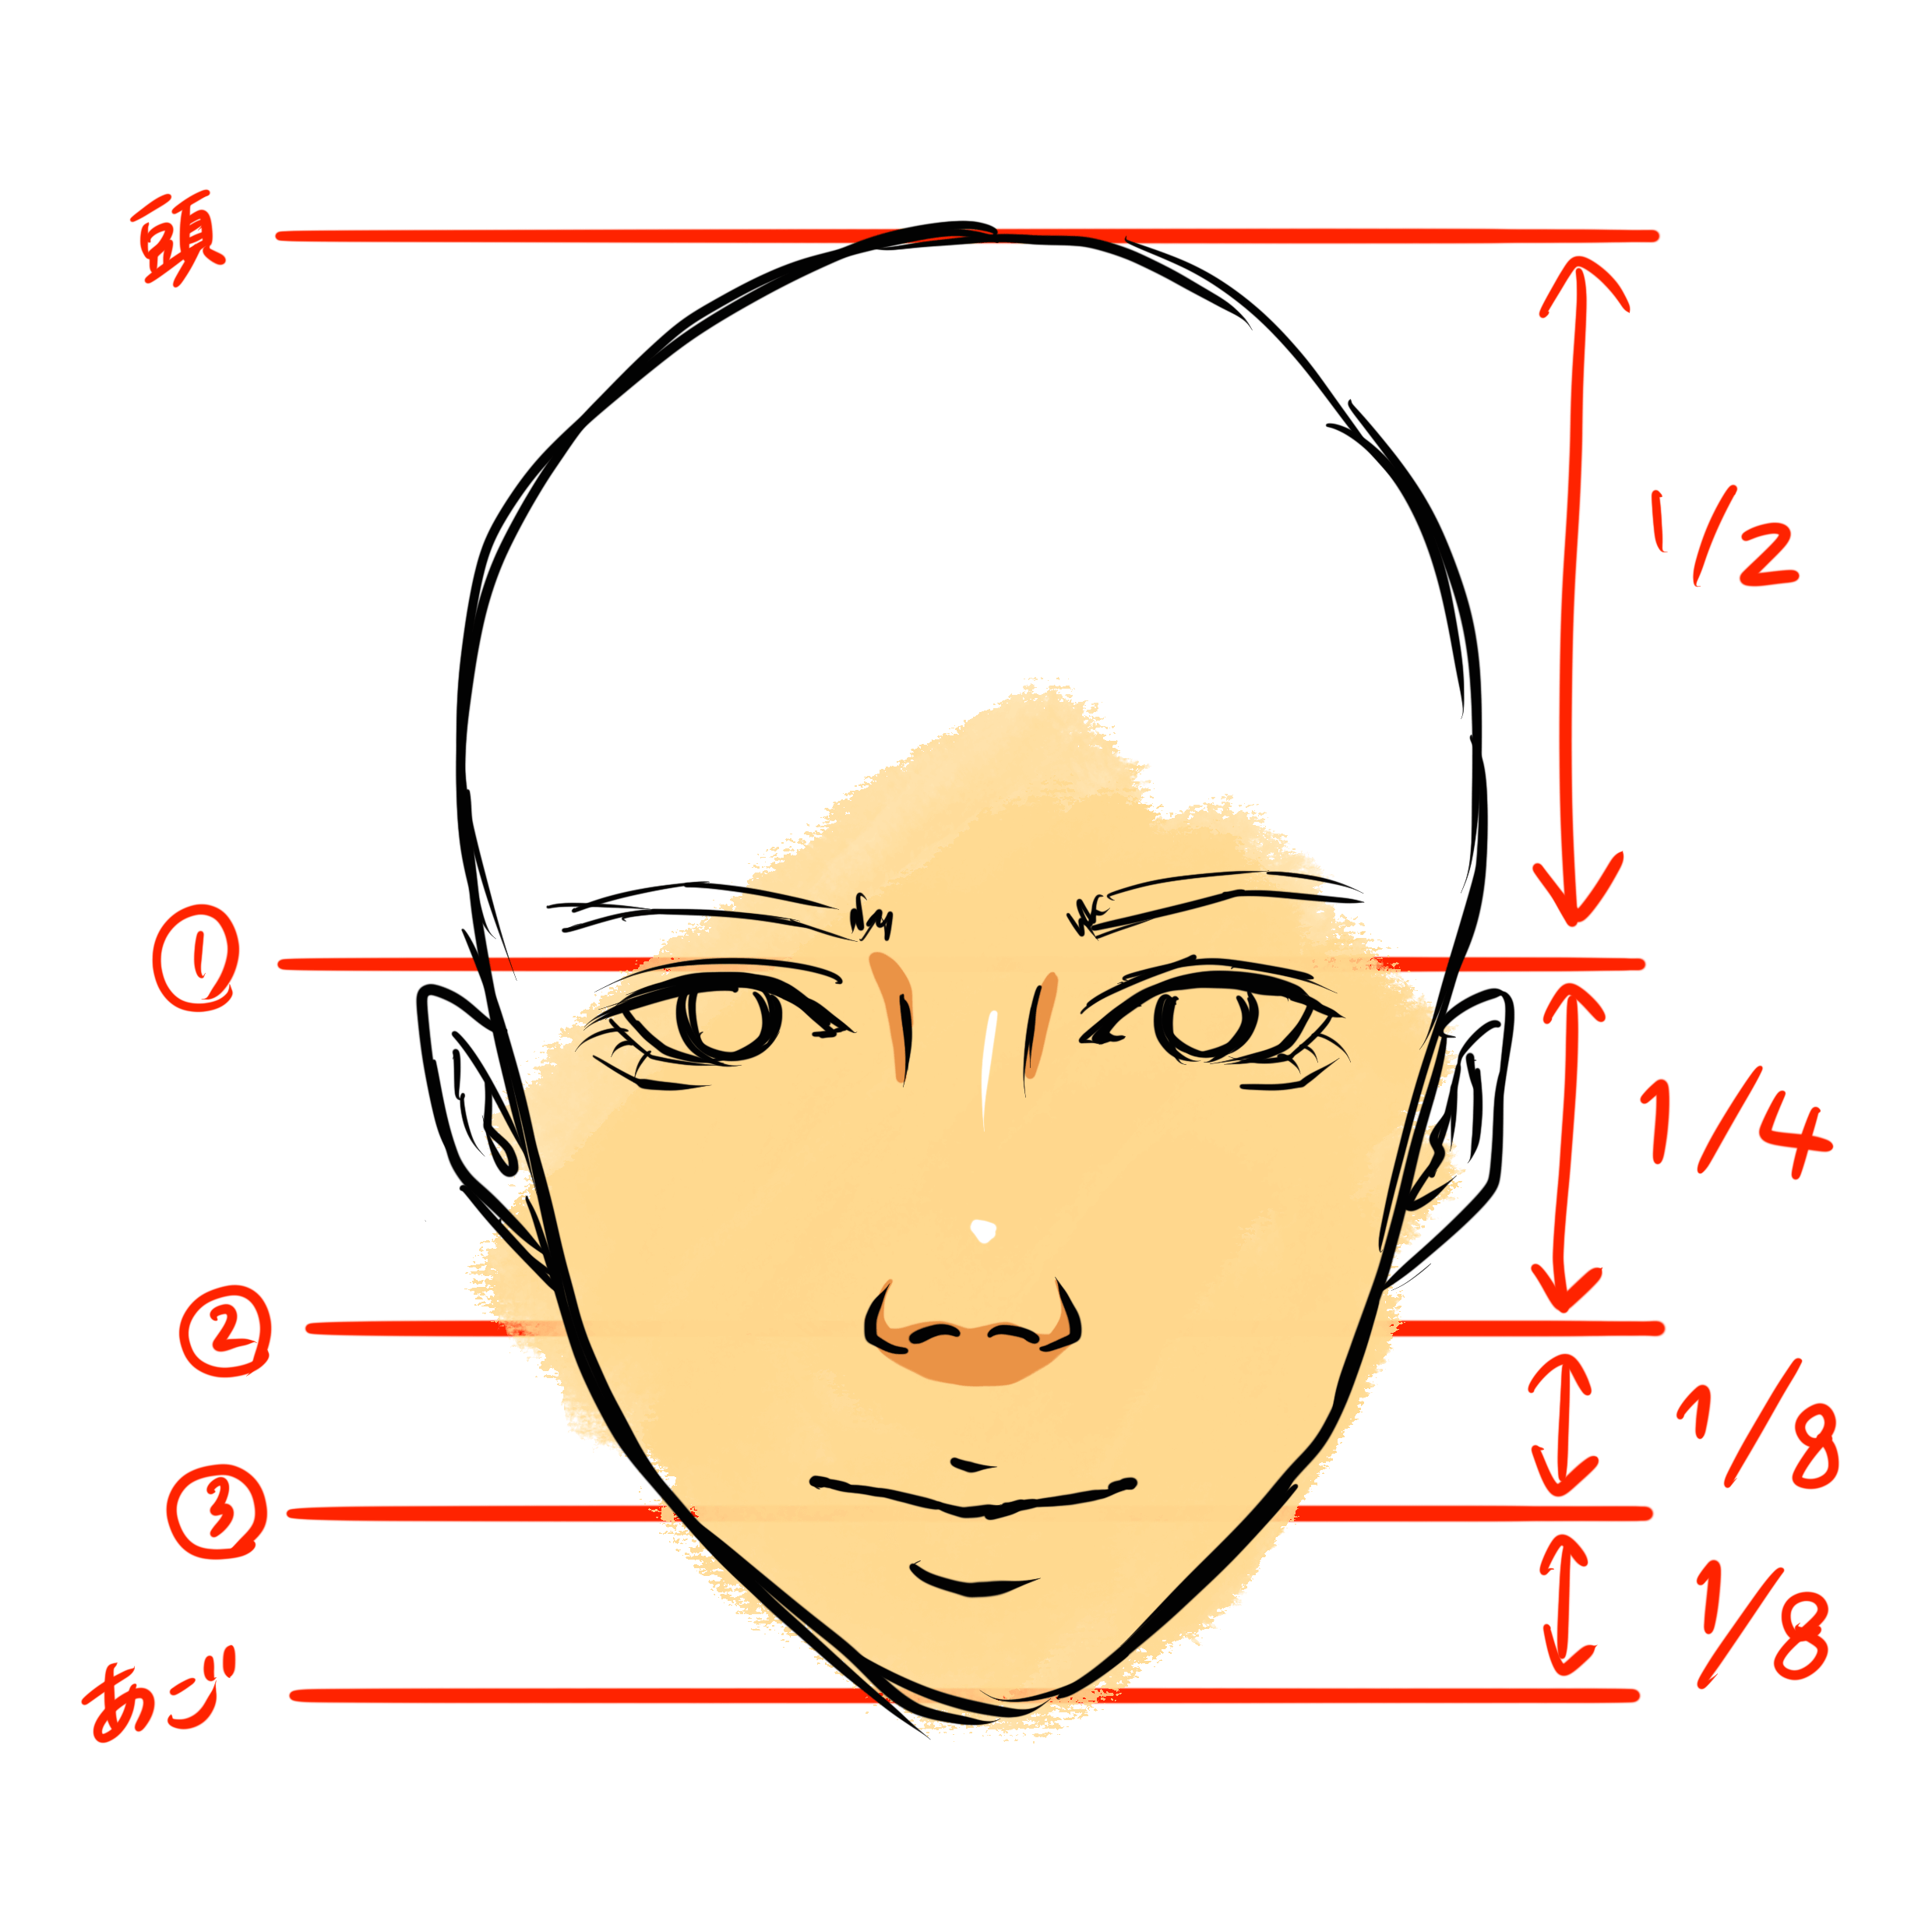 鼻の描き方 顔全体のバランスを担う鼻の描き方を徹底解説 株式会社esolab